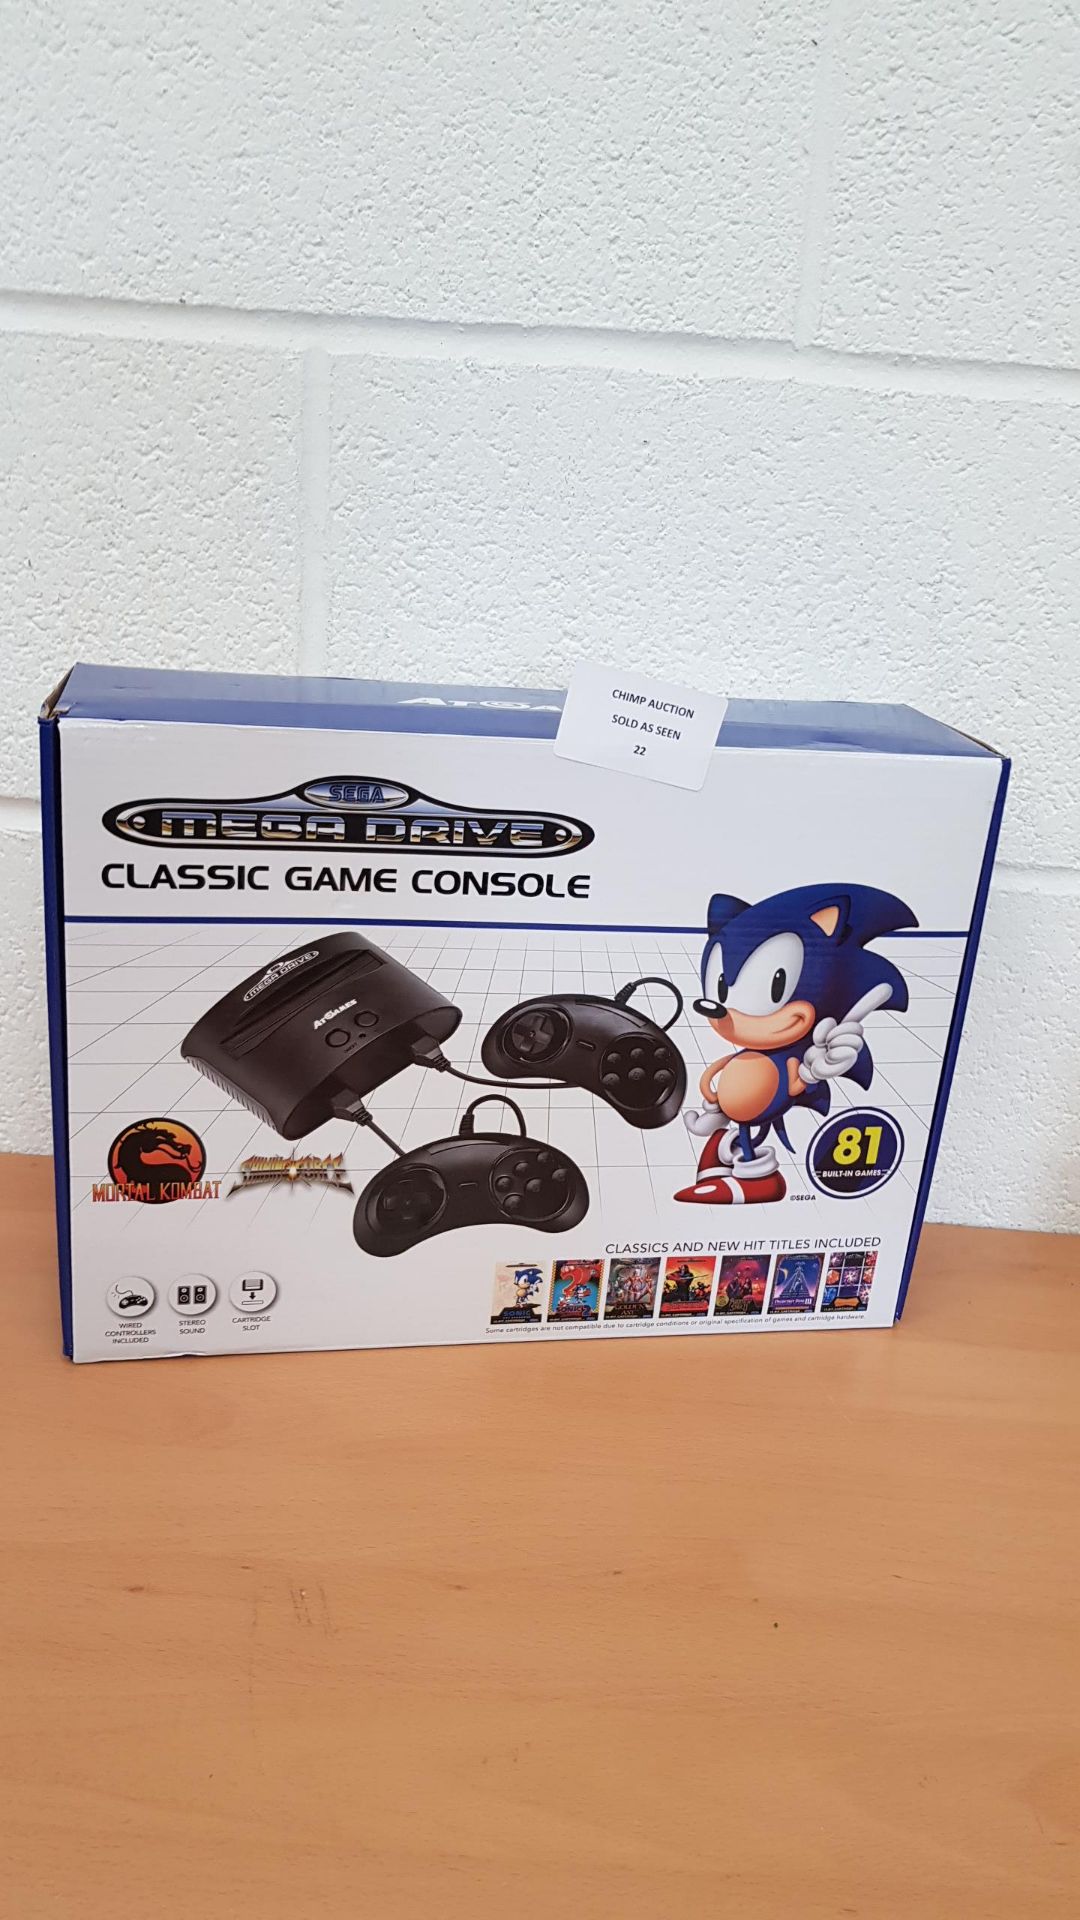 Sega Mega Drive Classic + 81 games console RRP £79.99.